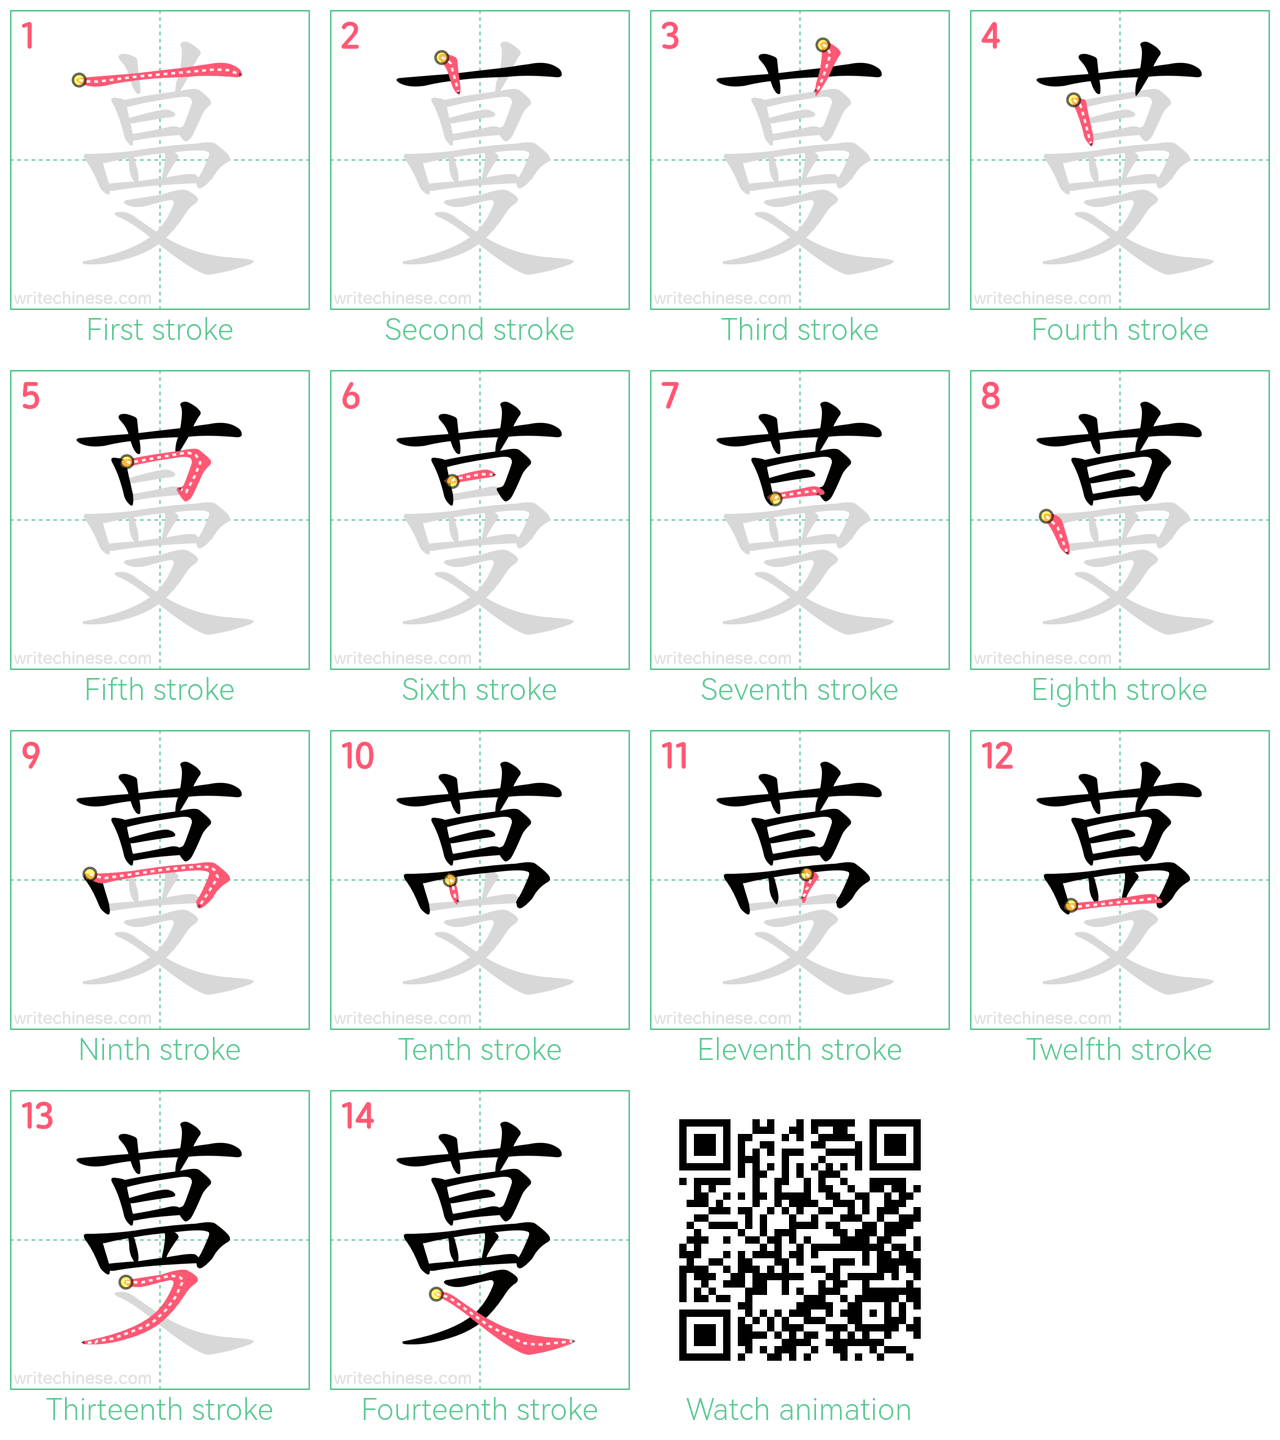 蔓 step-by-step stroke order diagrams